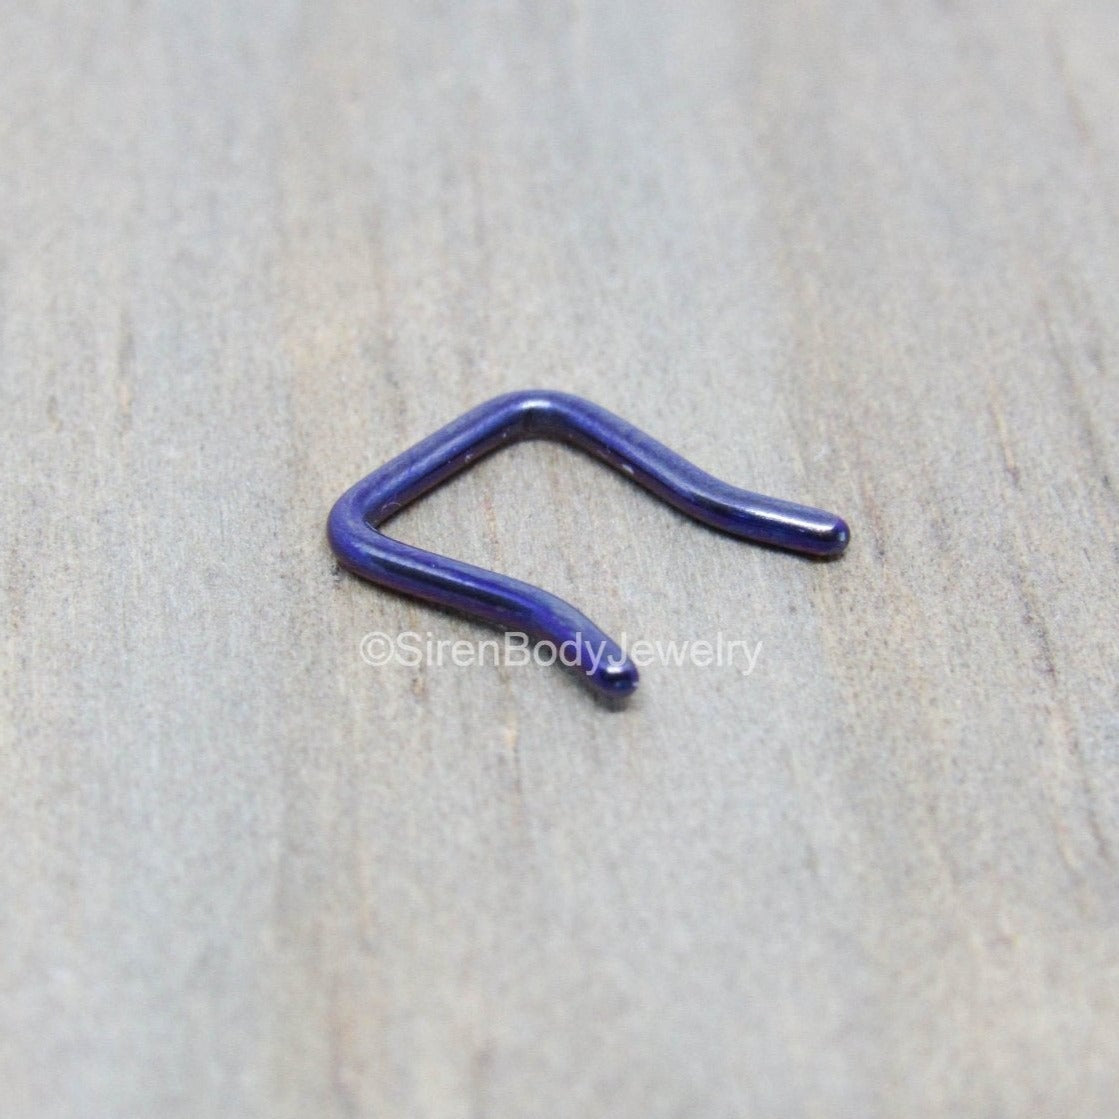 14g dark purple septum piercing retainer